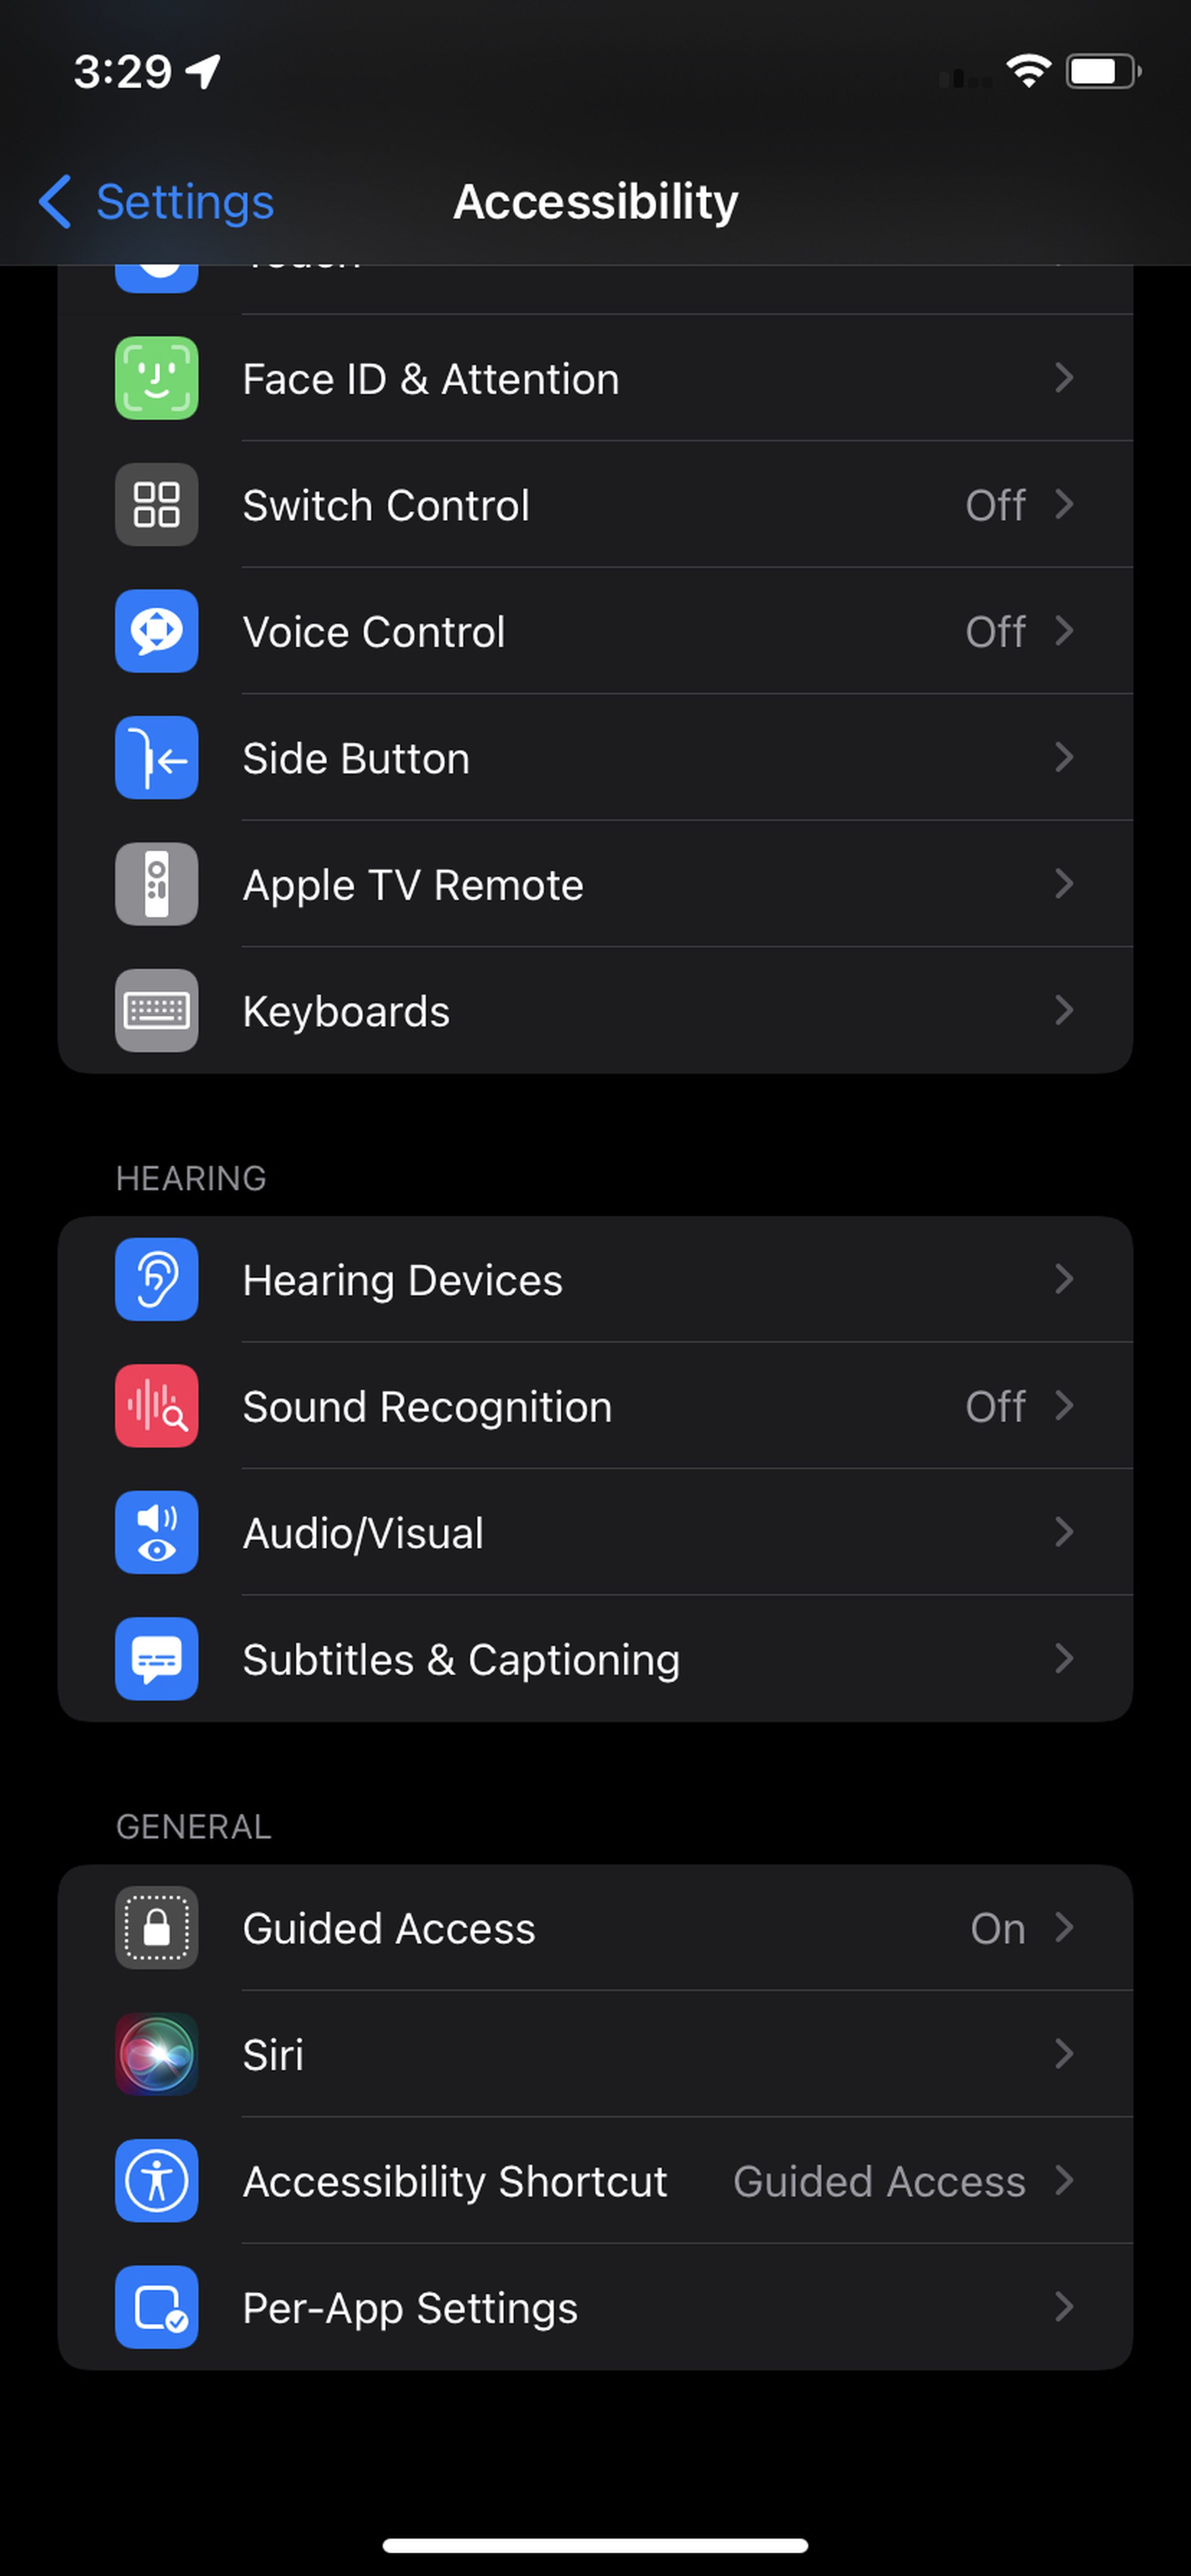 Bottom half of iOS accessibility menu